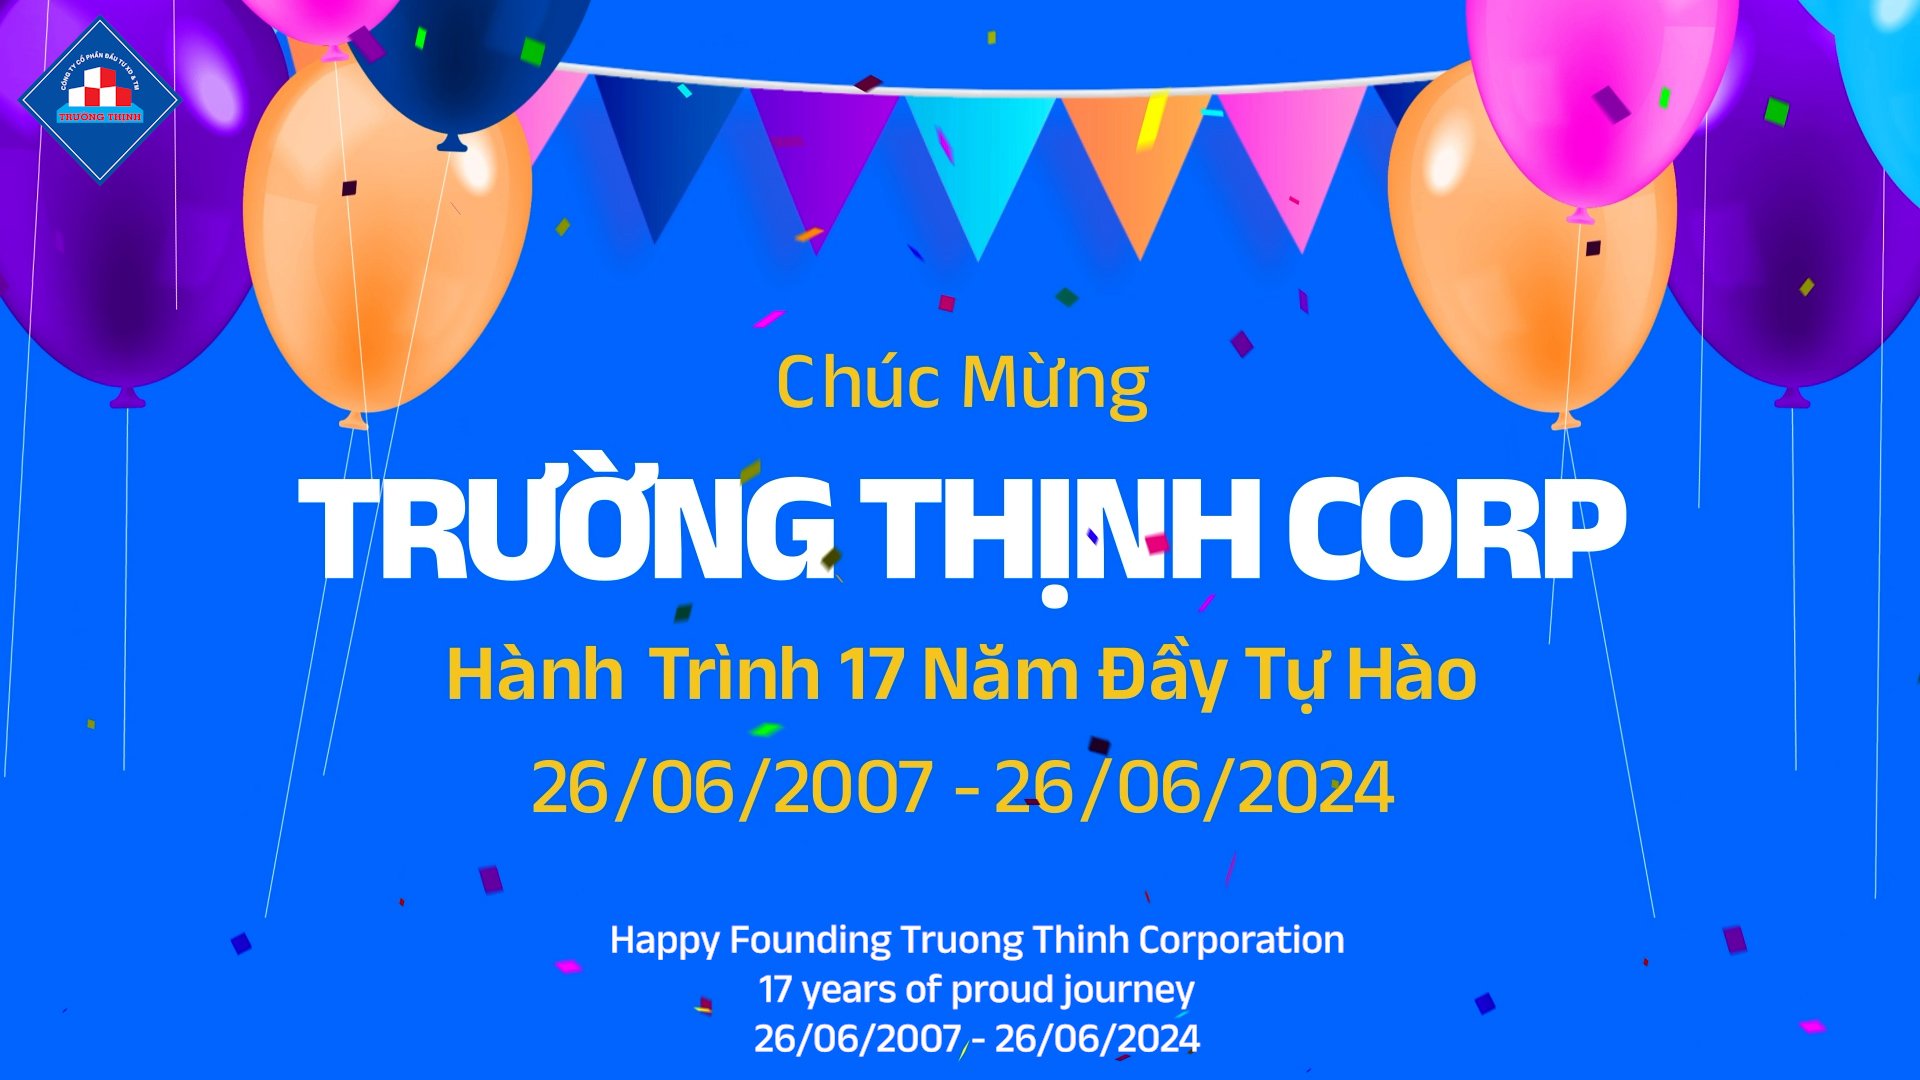 Trường Thịnh Corp - Hành trình 17 năm đầy tự hào